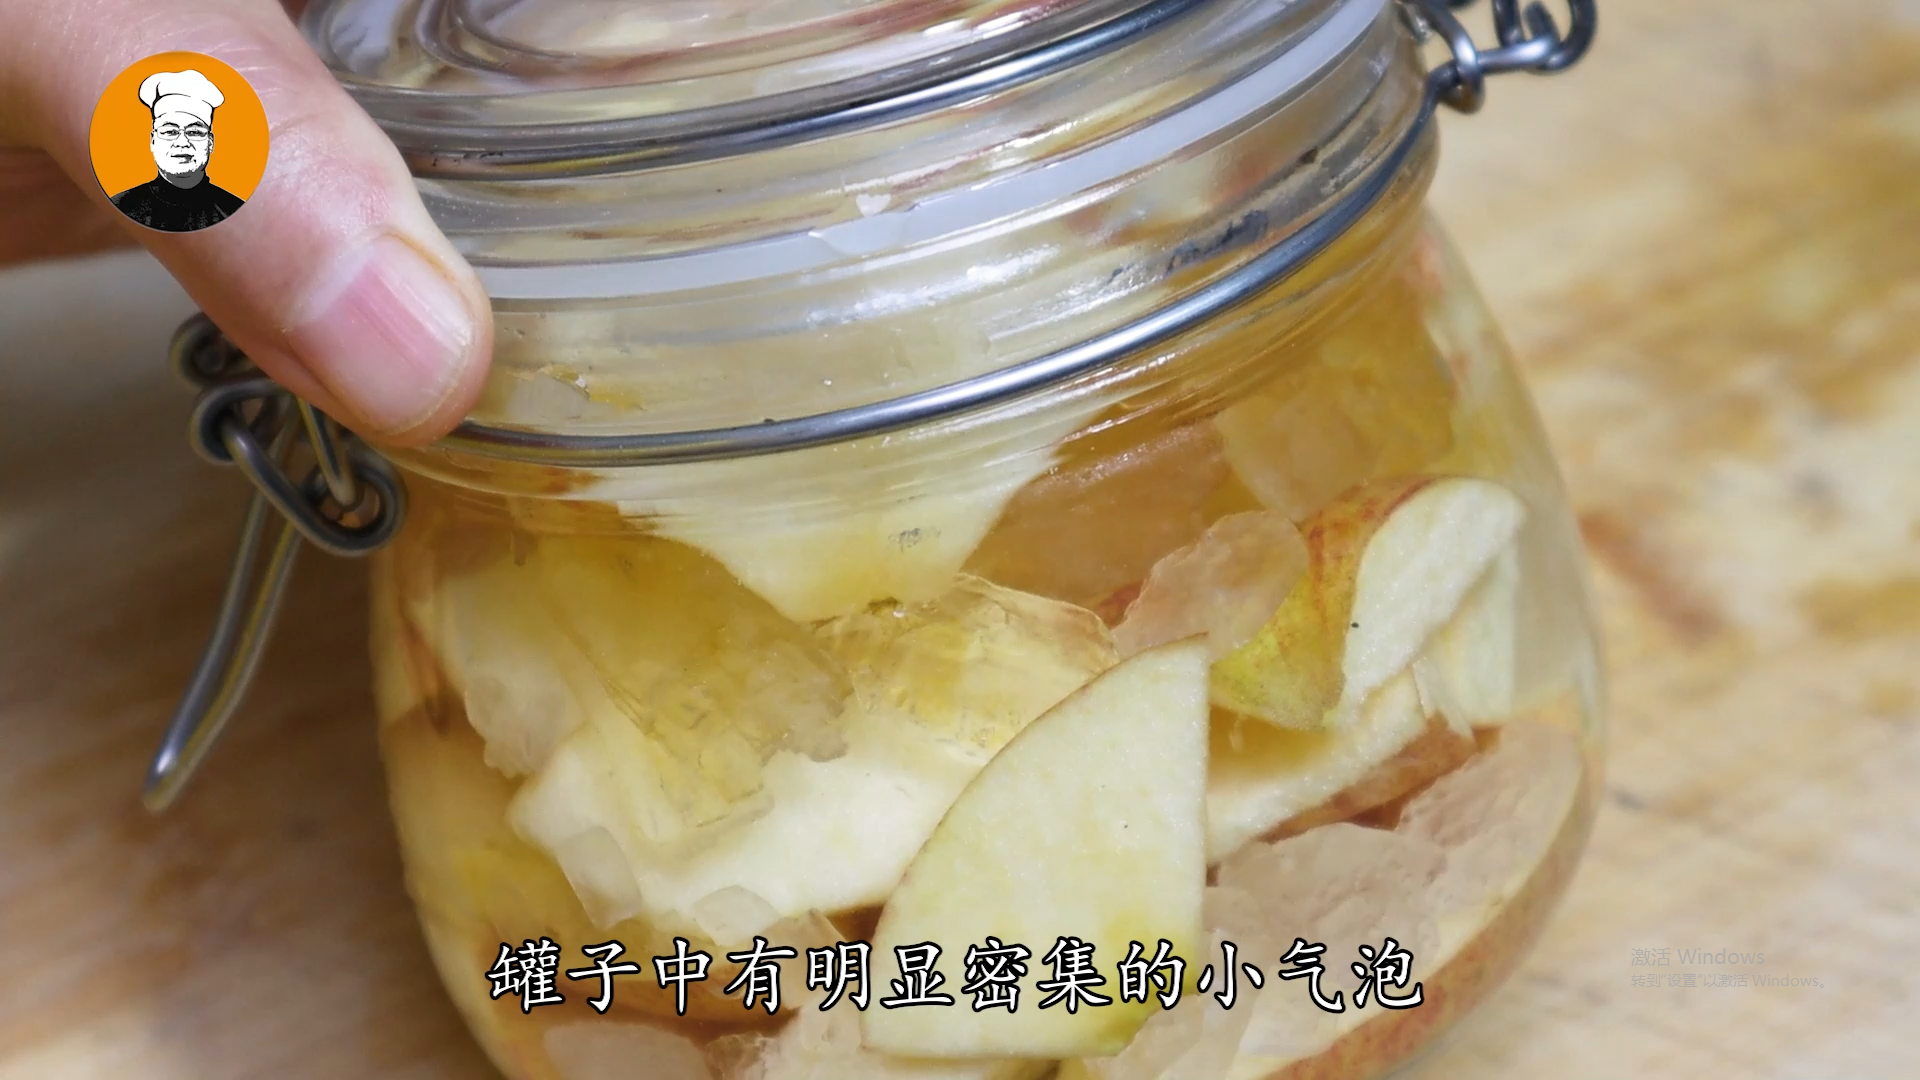 苹果醋的做法自酿全过程_苹果怎么酿成醋-6